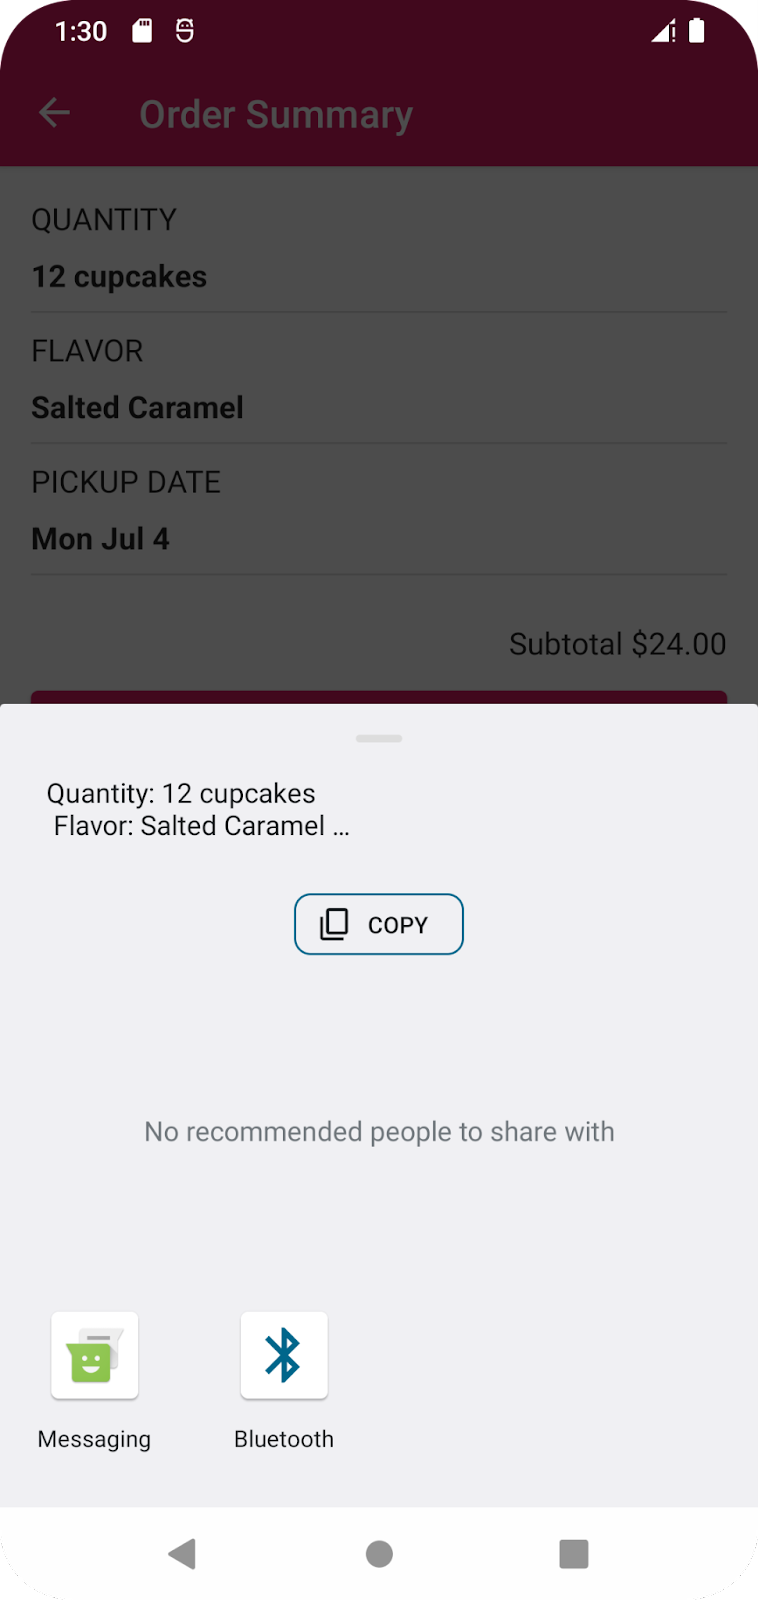 La app de Cupcake presenta al usuario opciones para compartir, como SMS o correo electrónico.